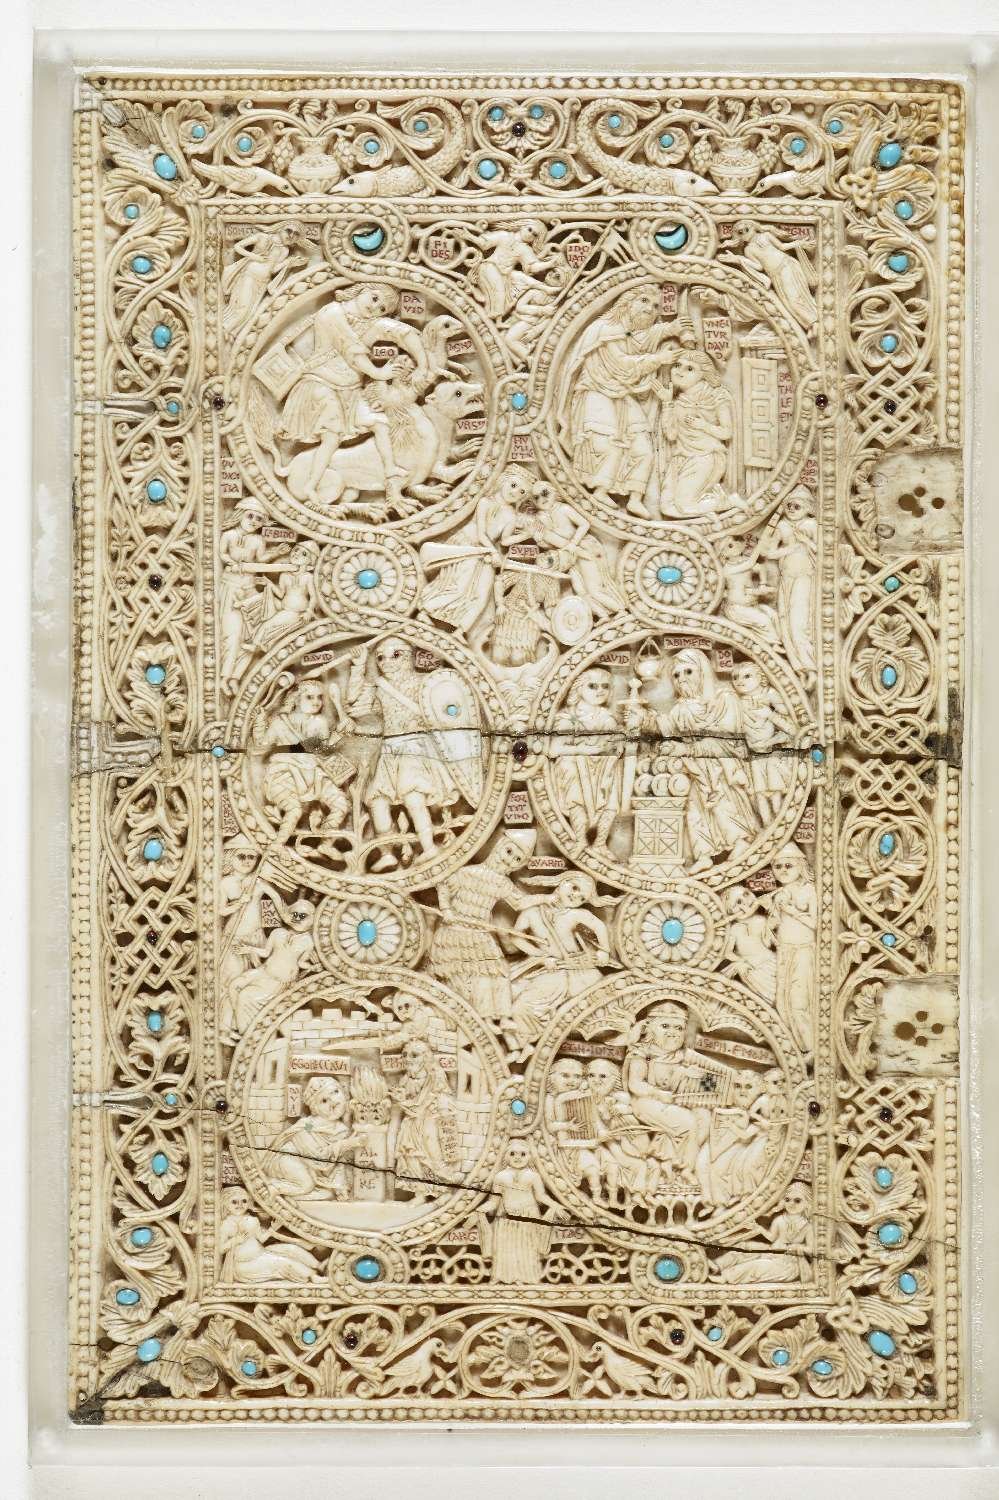 The ivory cover of Melisende's fancy psalter.